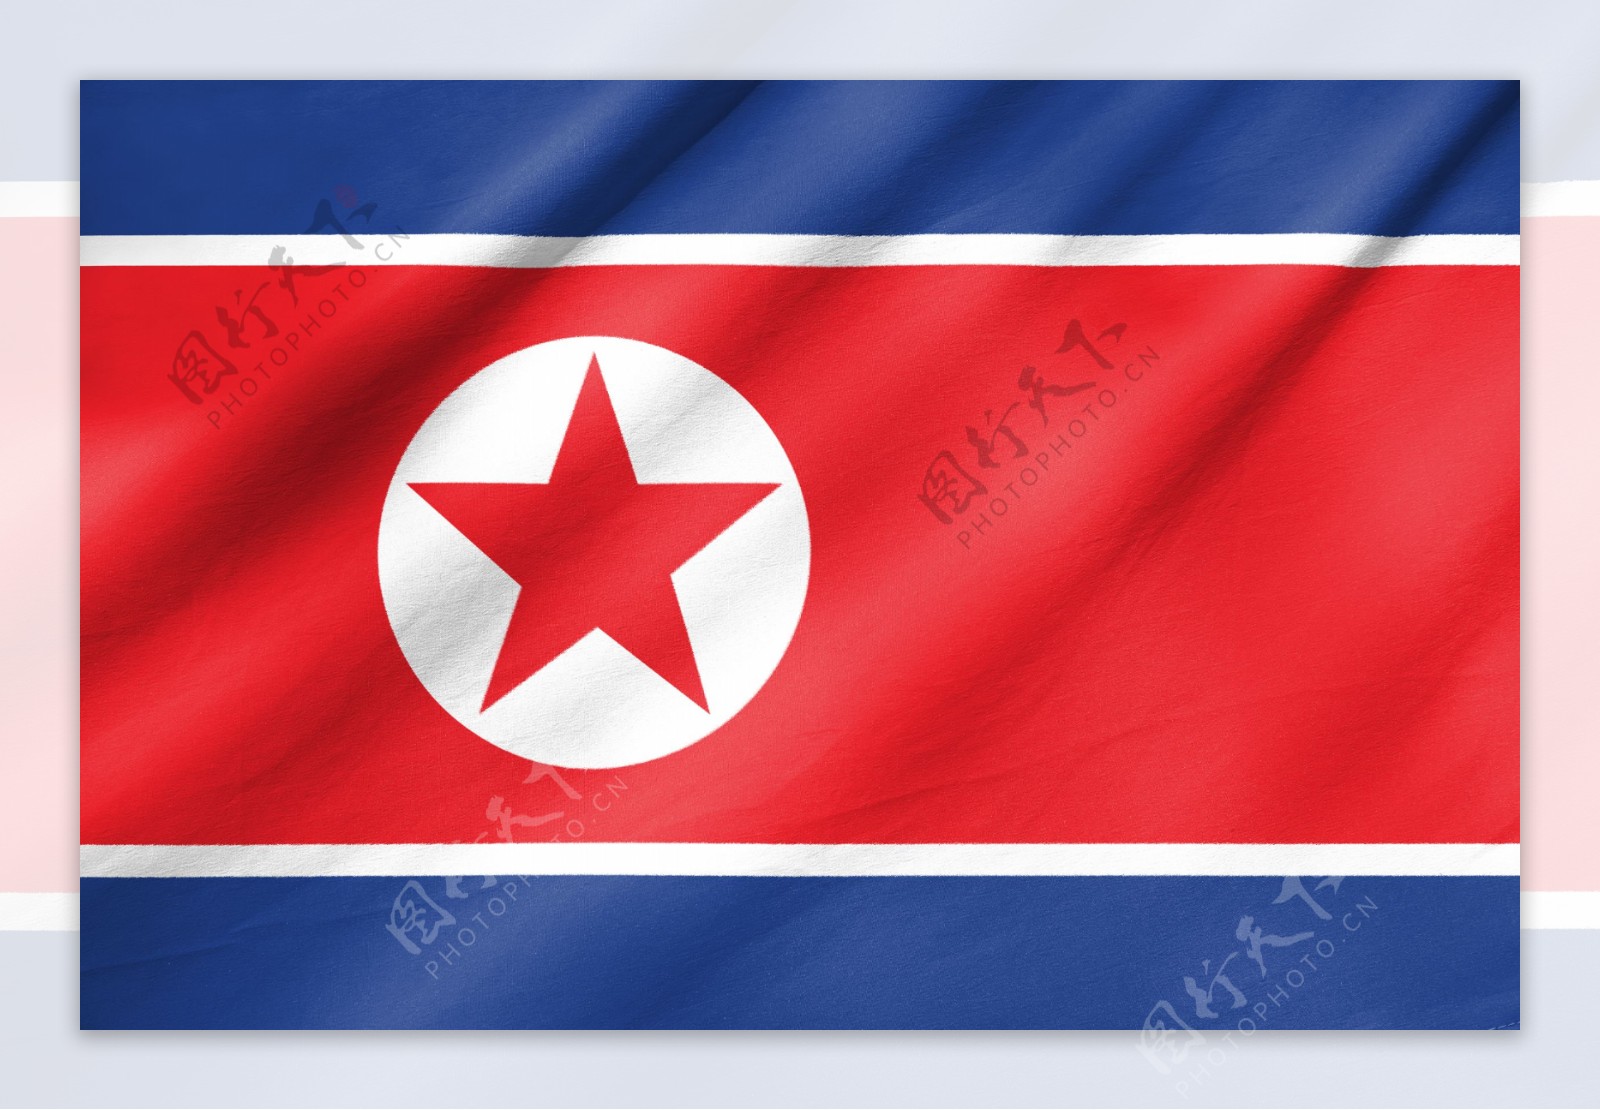 朝鲜旗帜